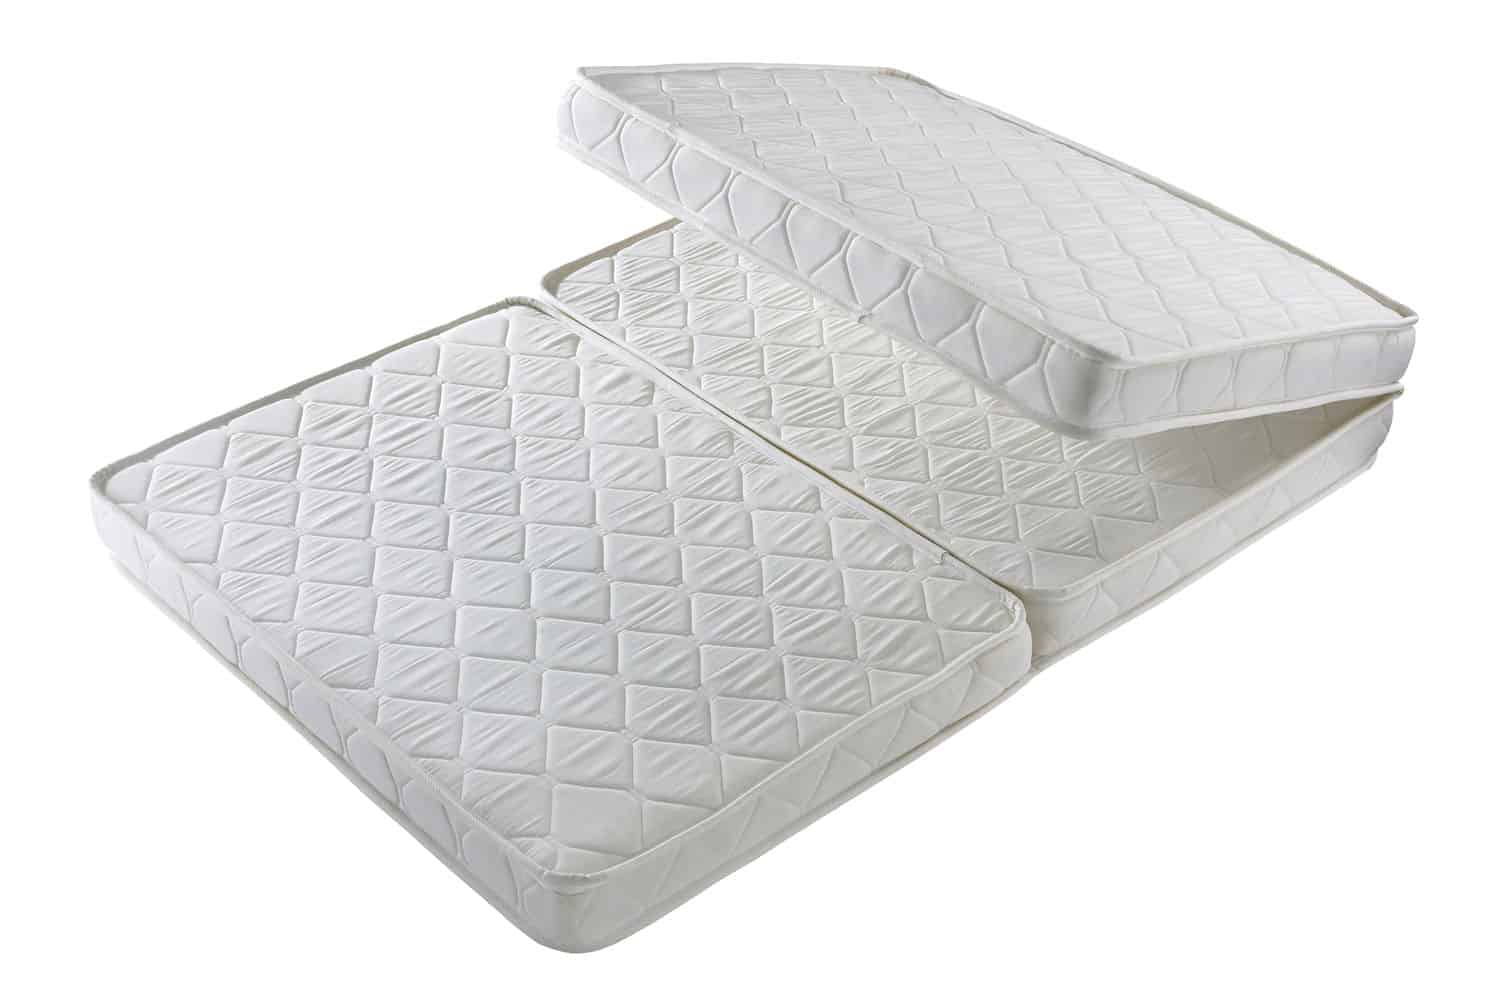 Milliard 4 inch Tri-Fold Foam Mattress, Twin